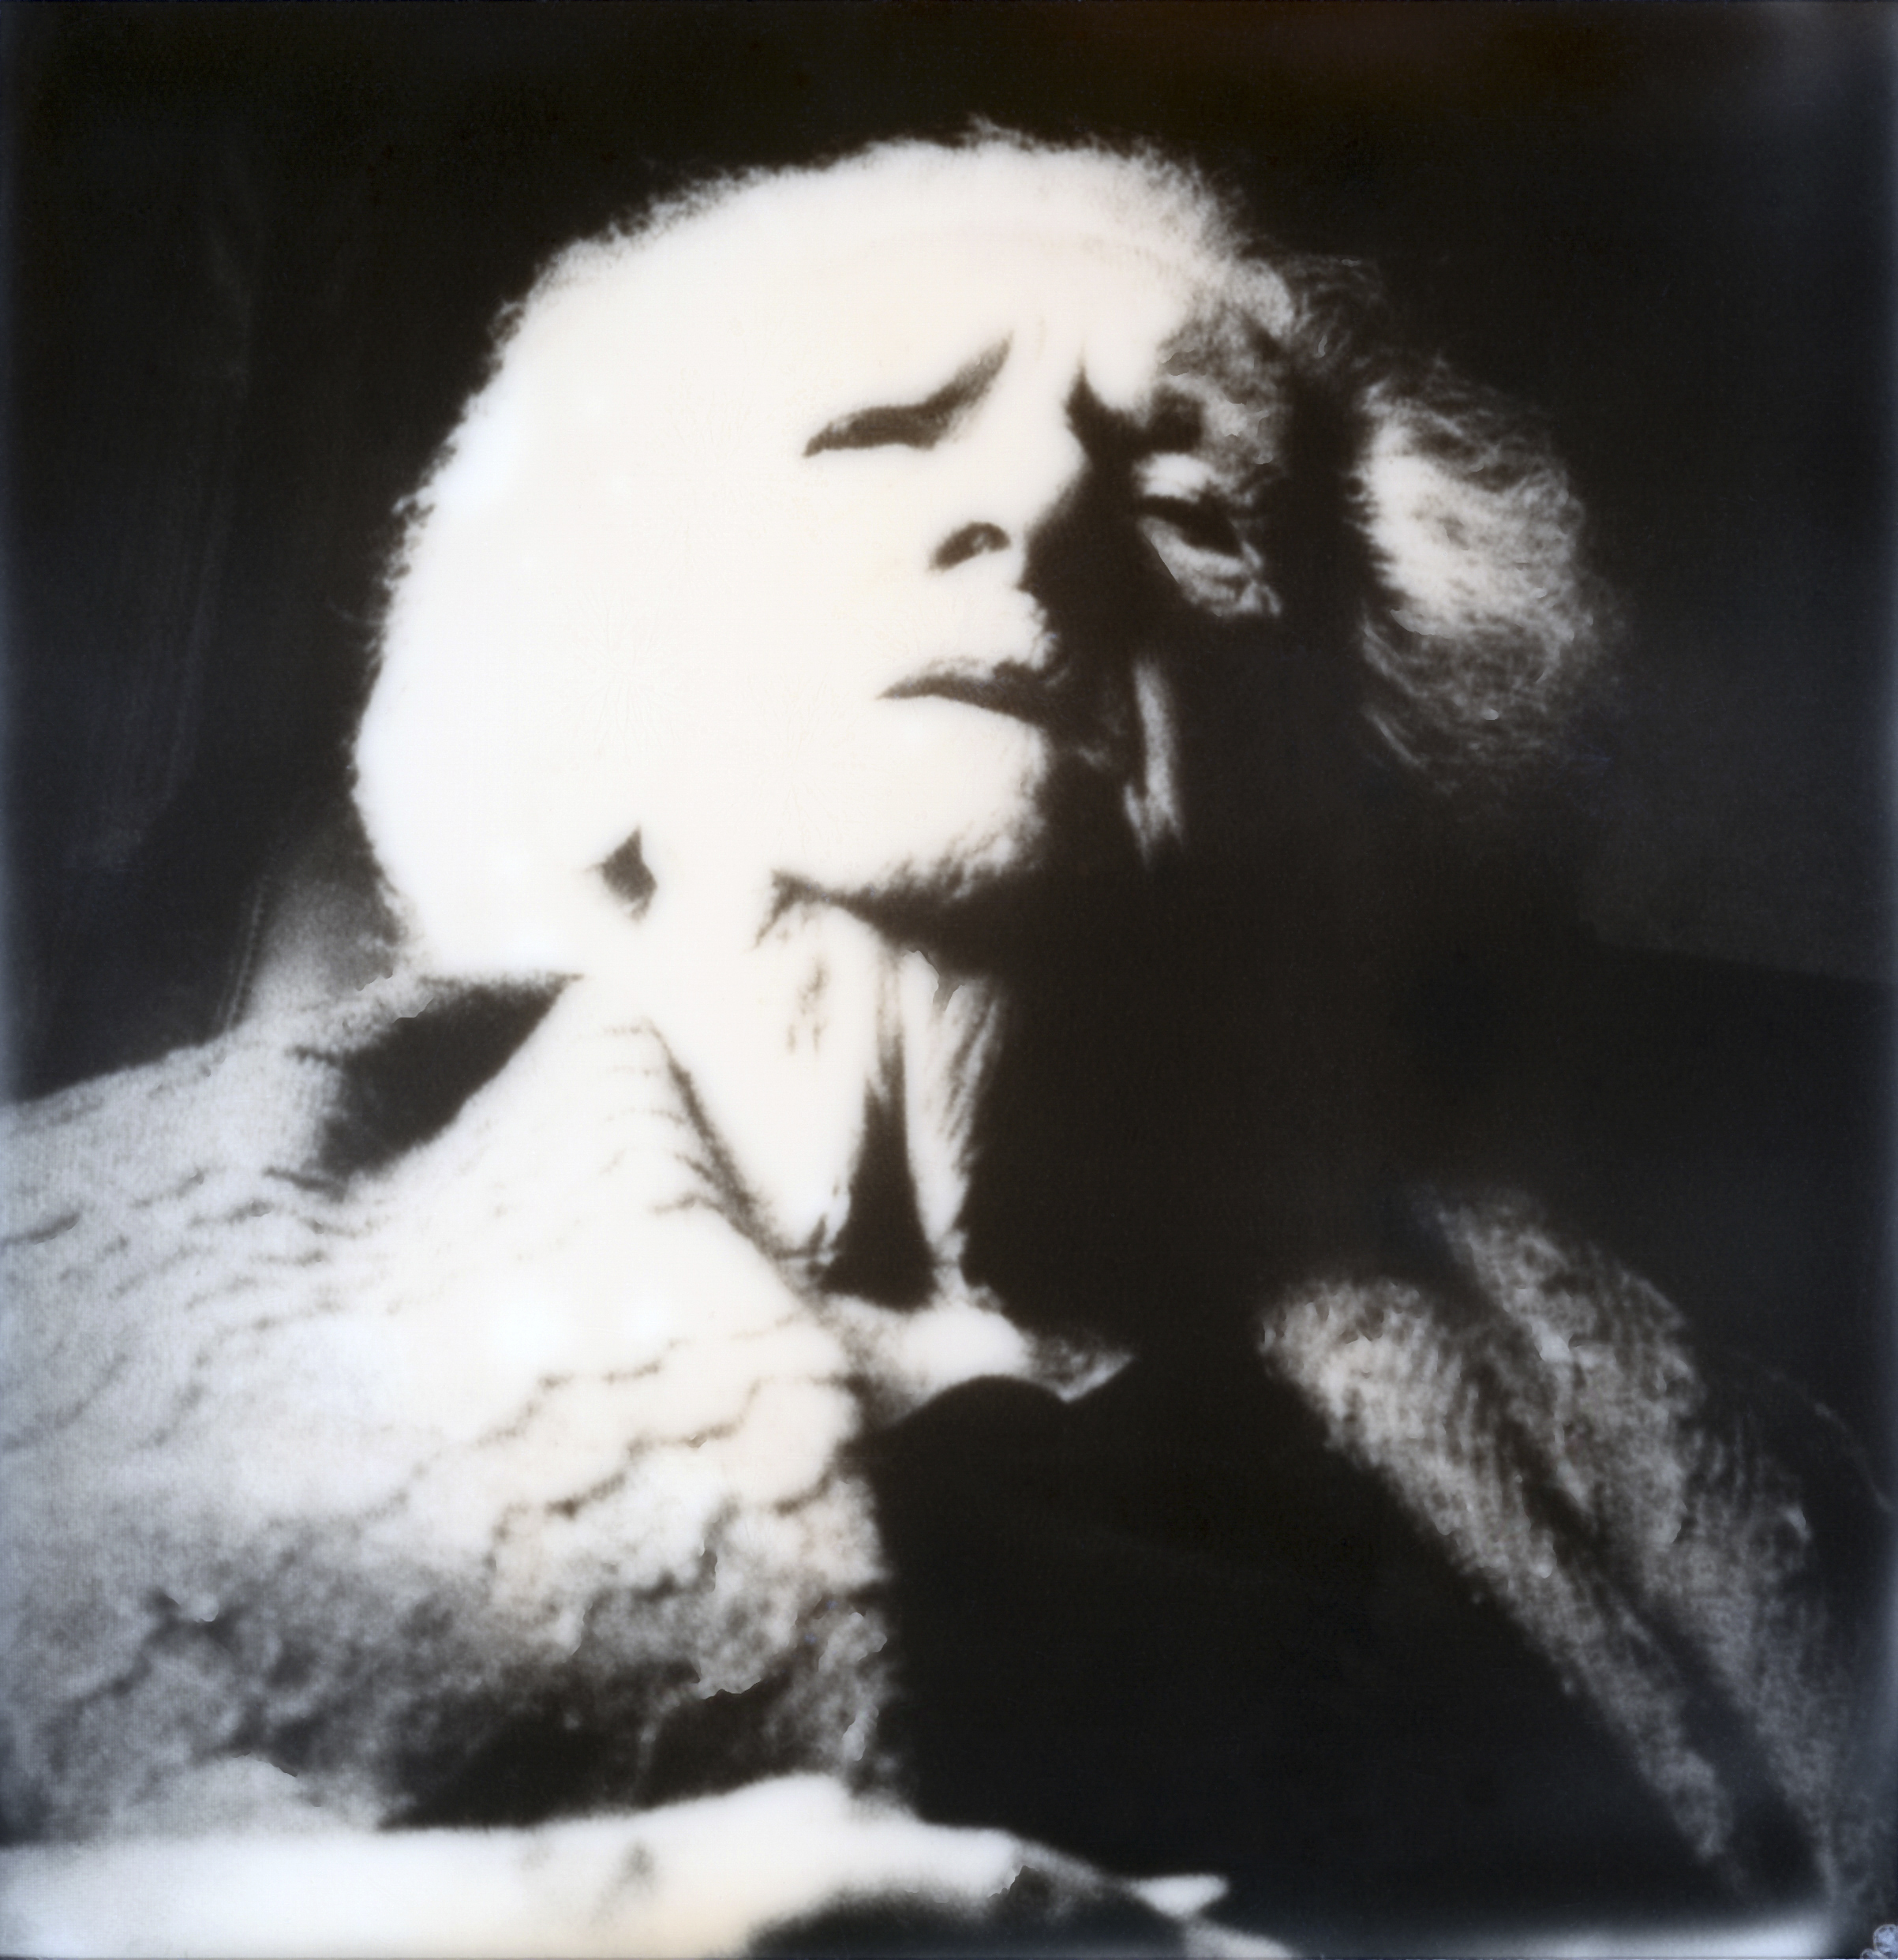 Photographie portrait noir et blanc avec un polaroid d'une femme âgée par Marc Mounier Kuhn